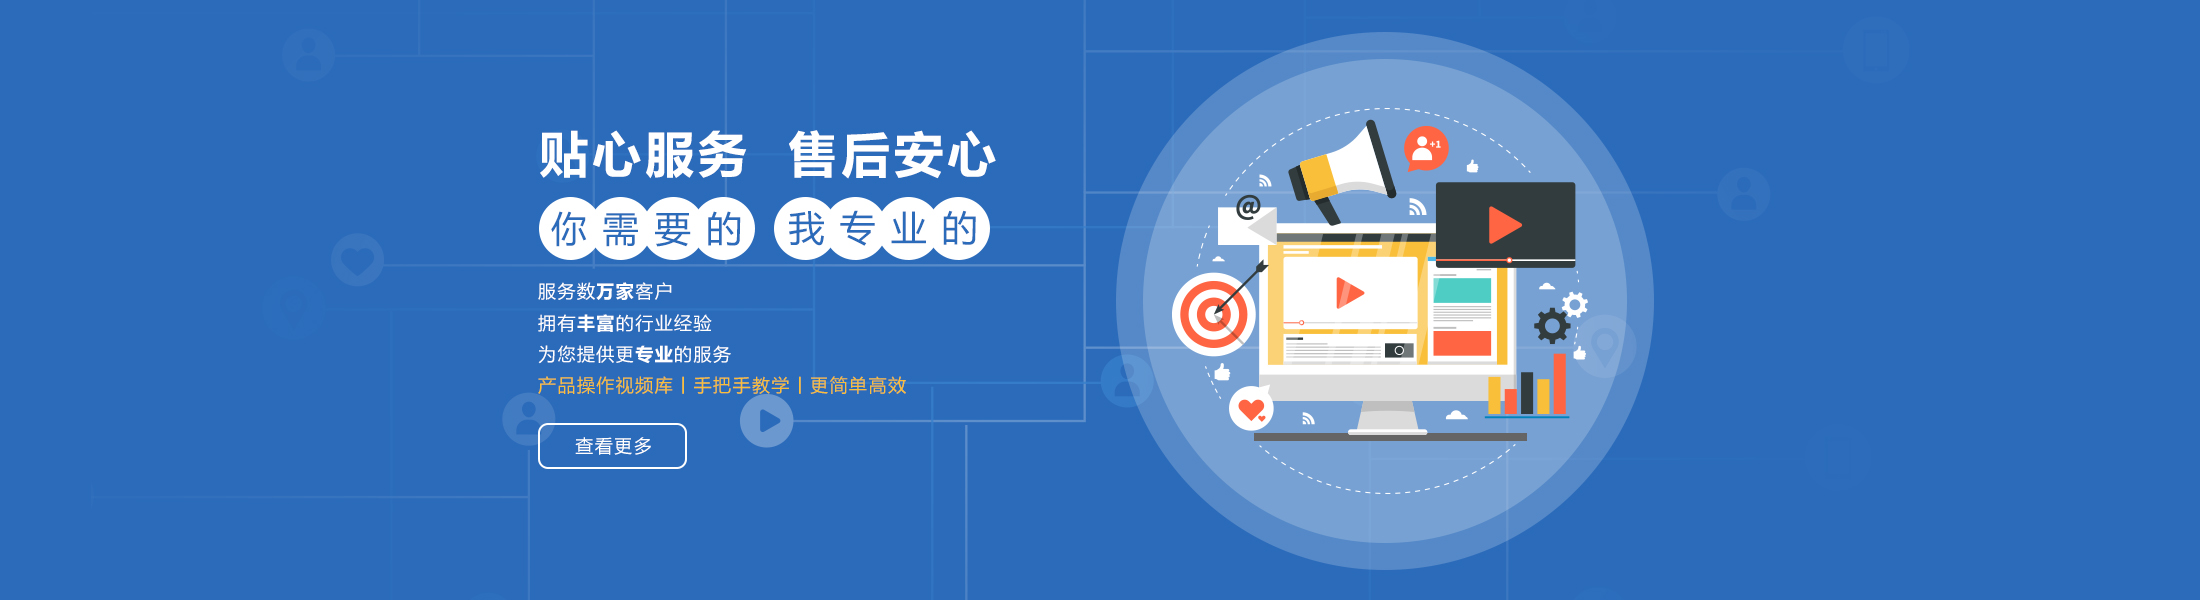 杭州万博手机版max网页版注册有限公司